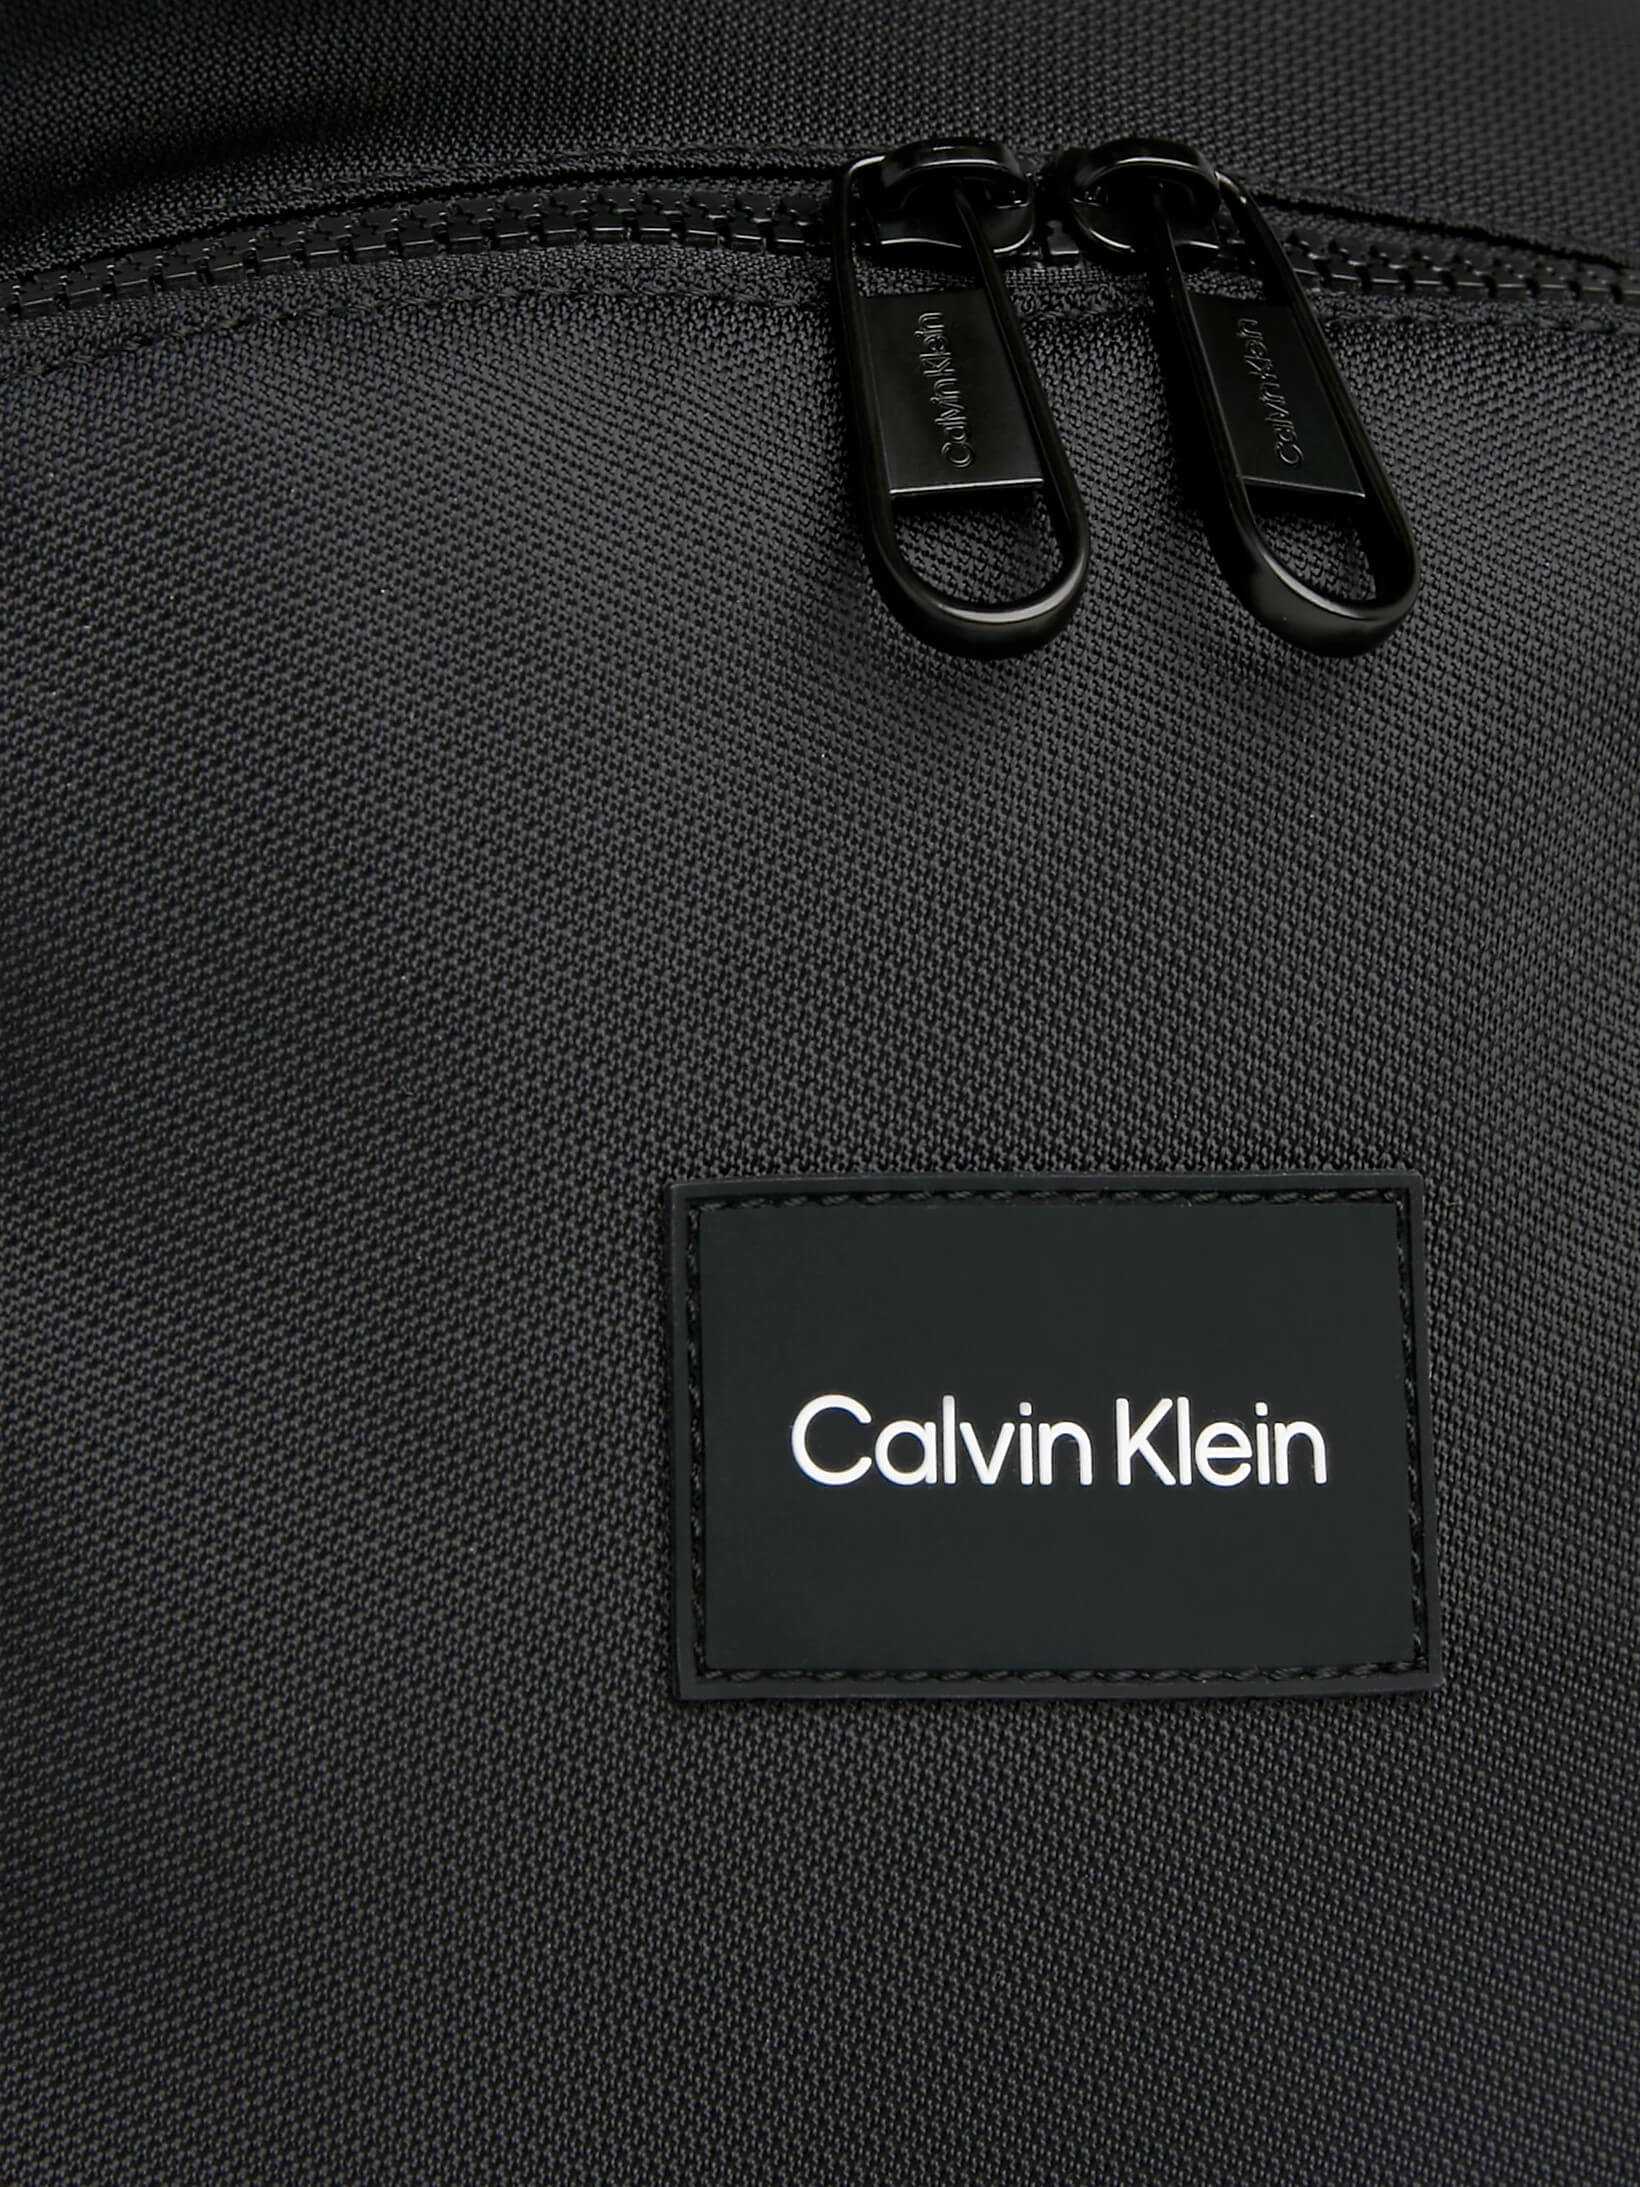 Mochila Calvin Klein Redonda Hombre Negro - Talla: Única